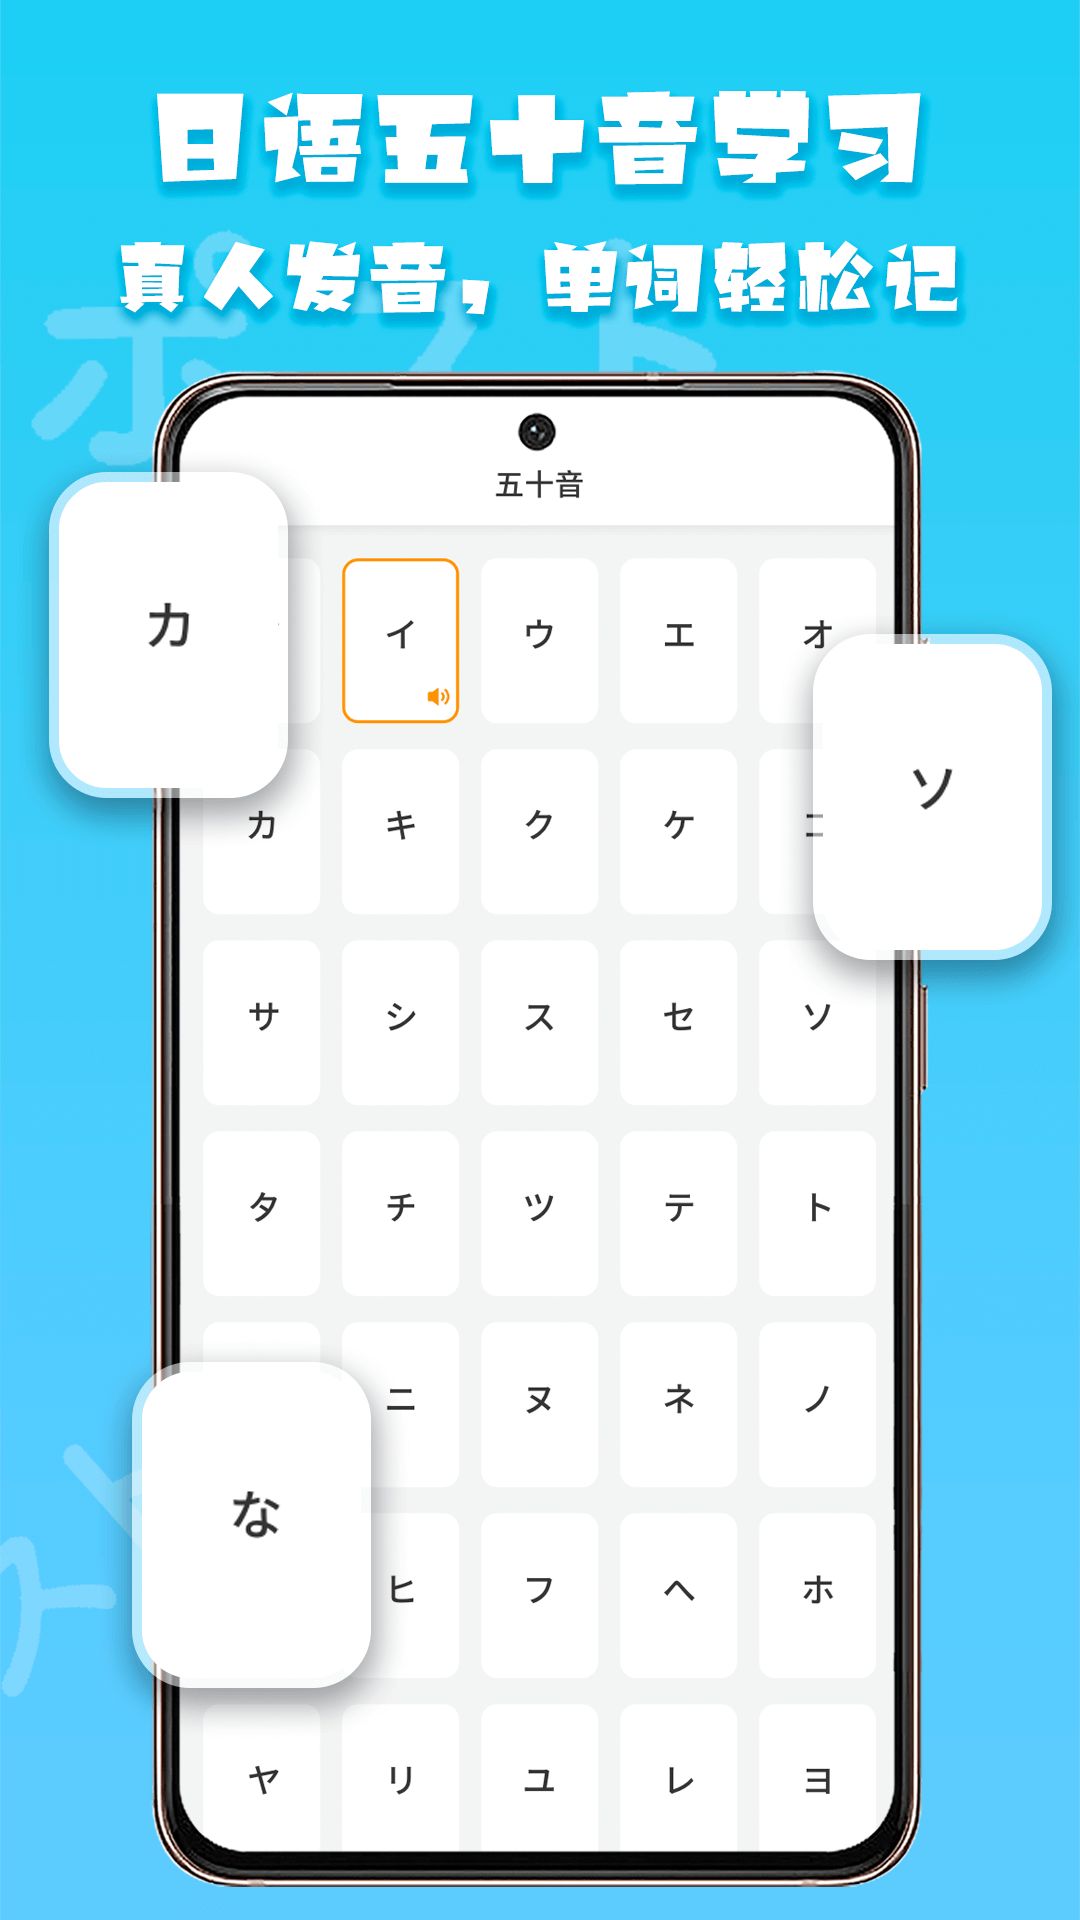 日语阅读app软件下载